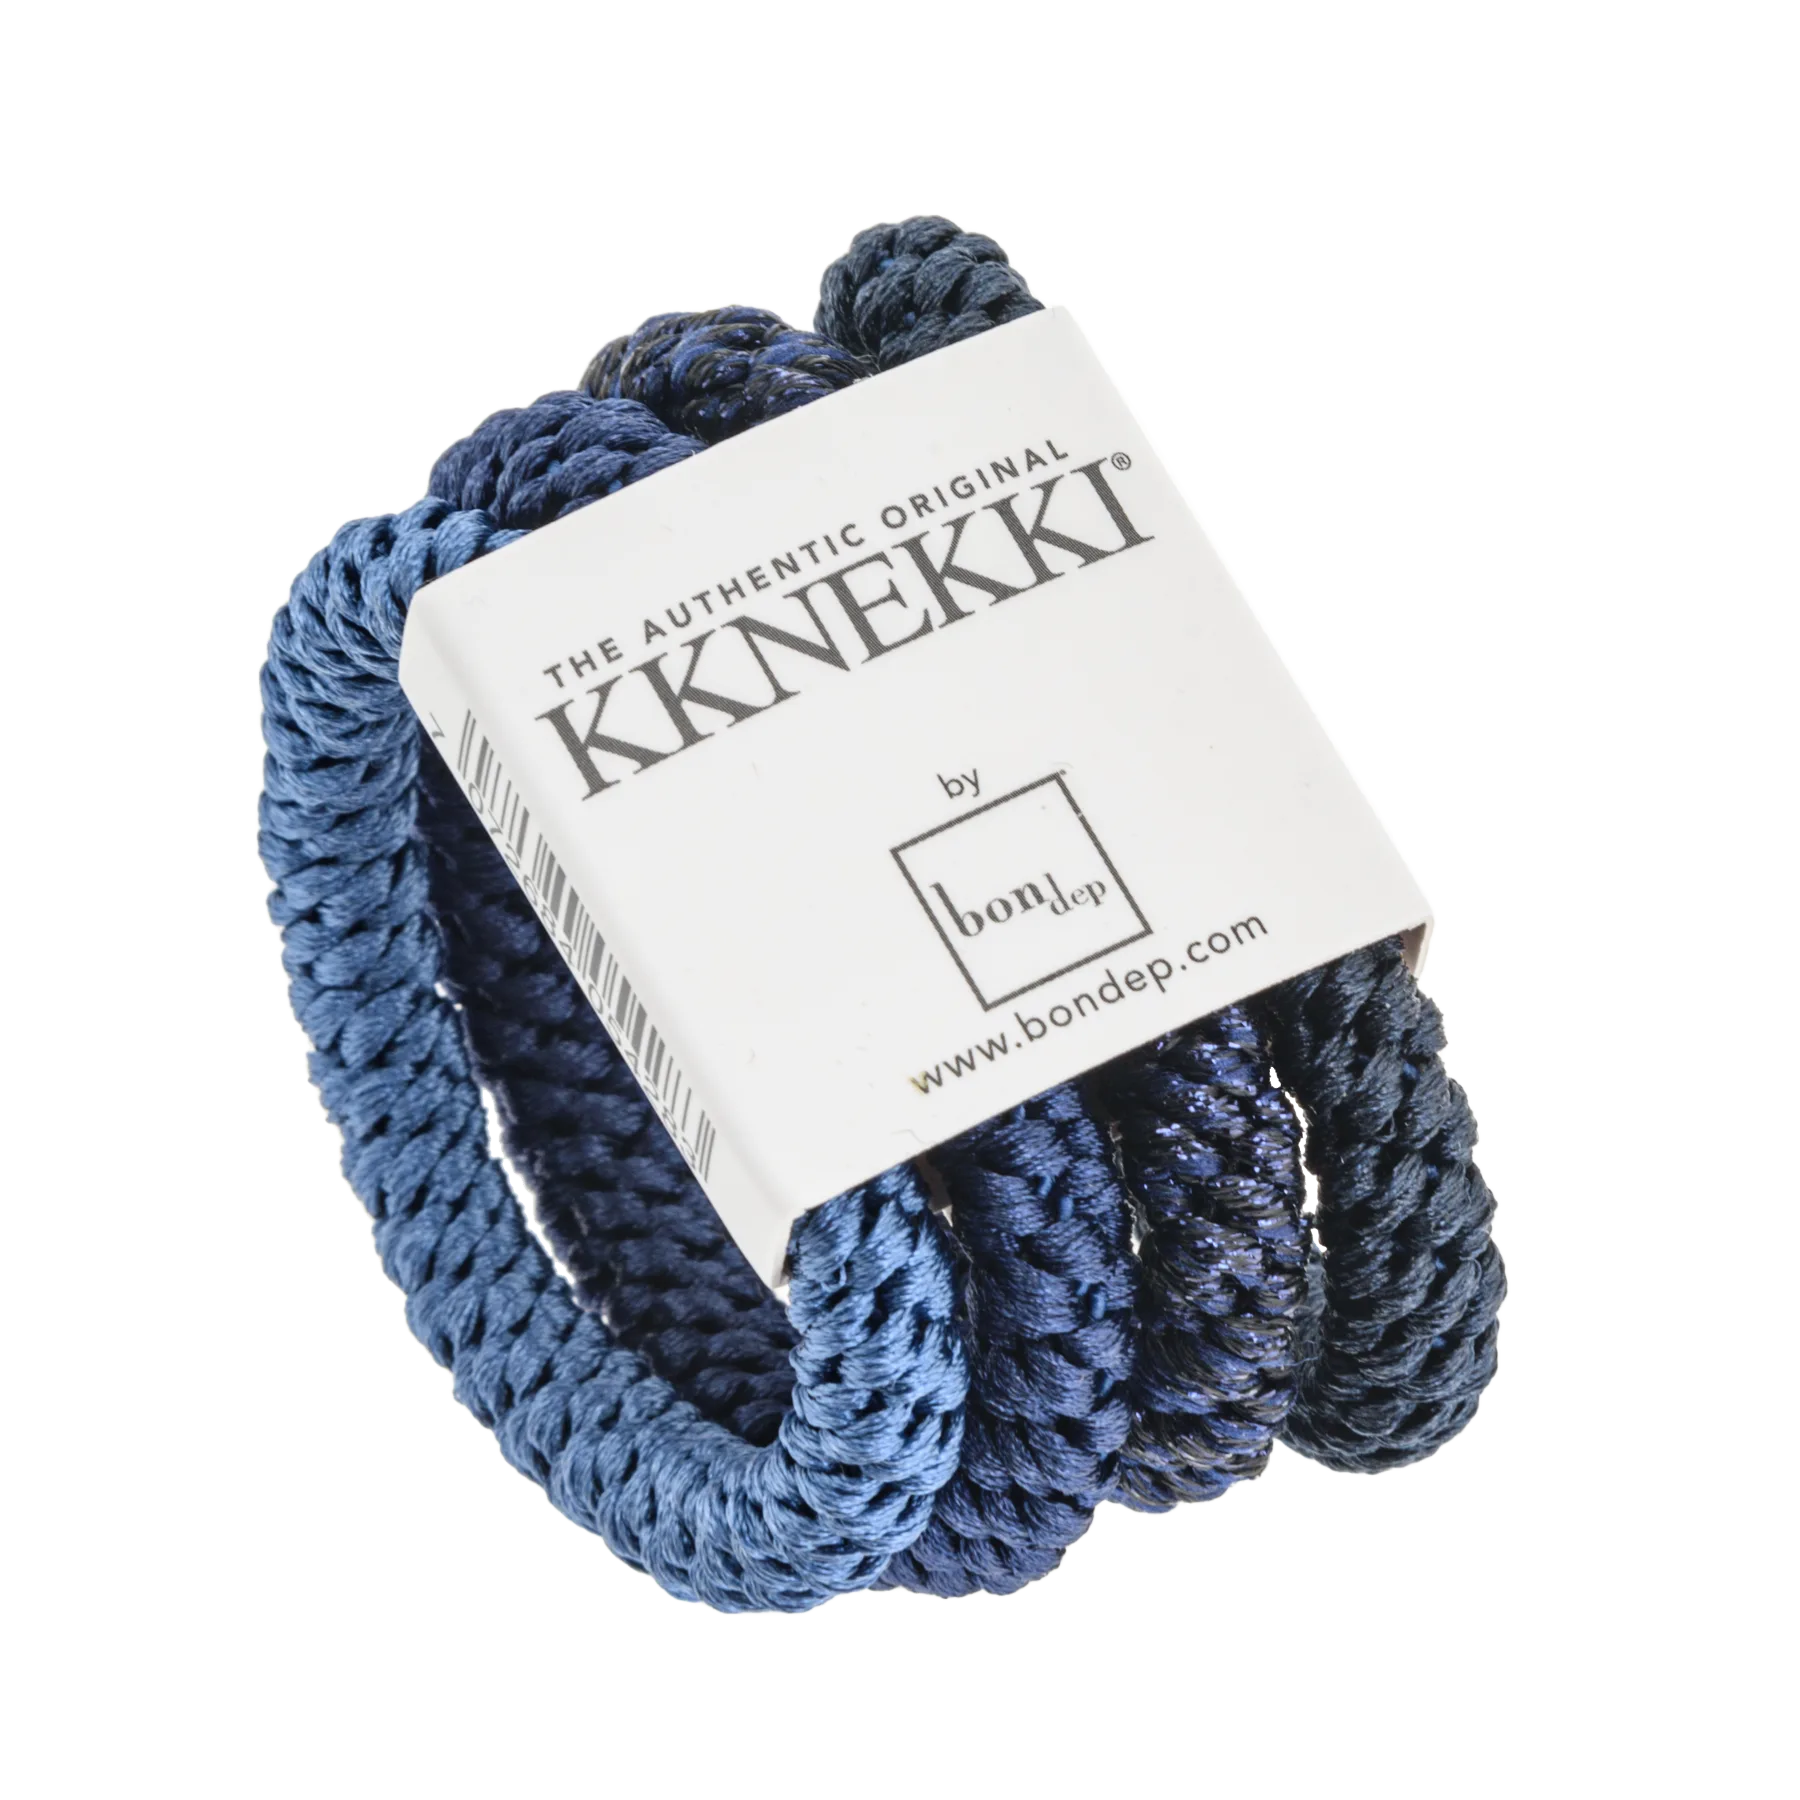 Set Of 4 Shades Of Blue Kknekki Hair Ties